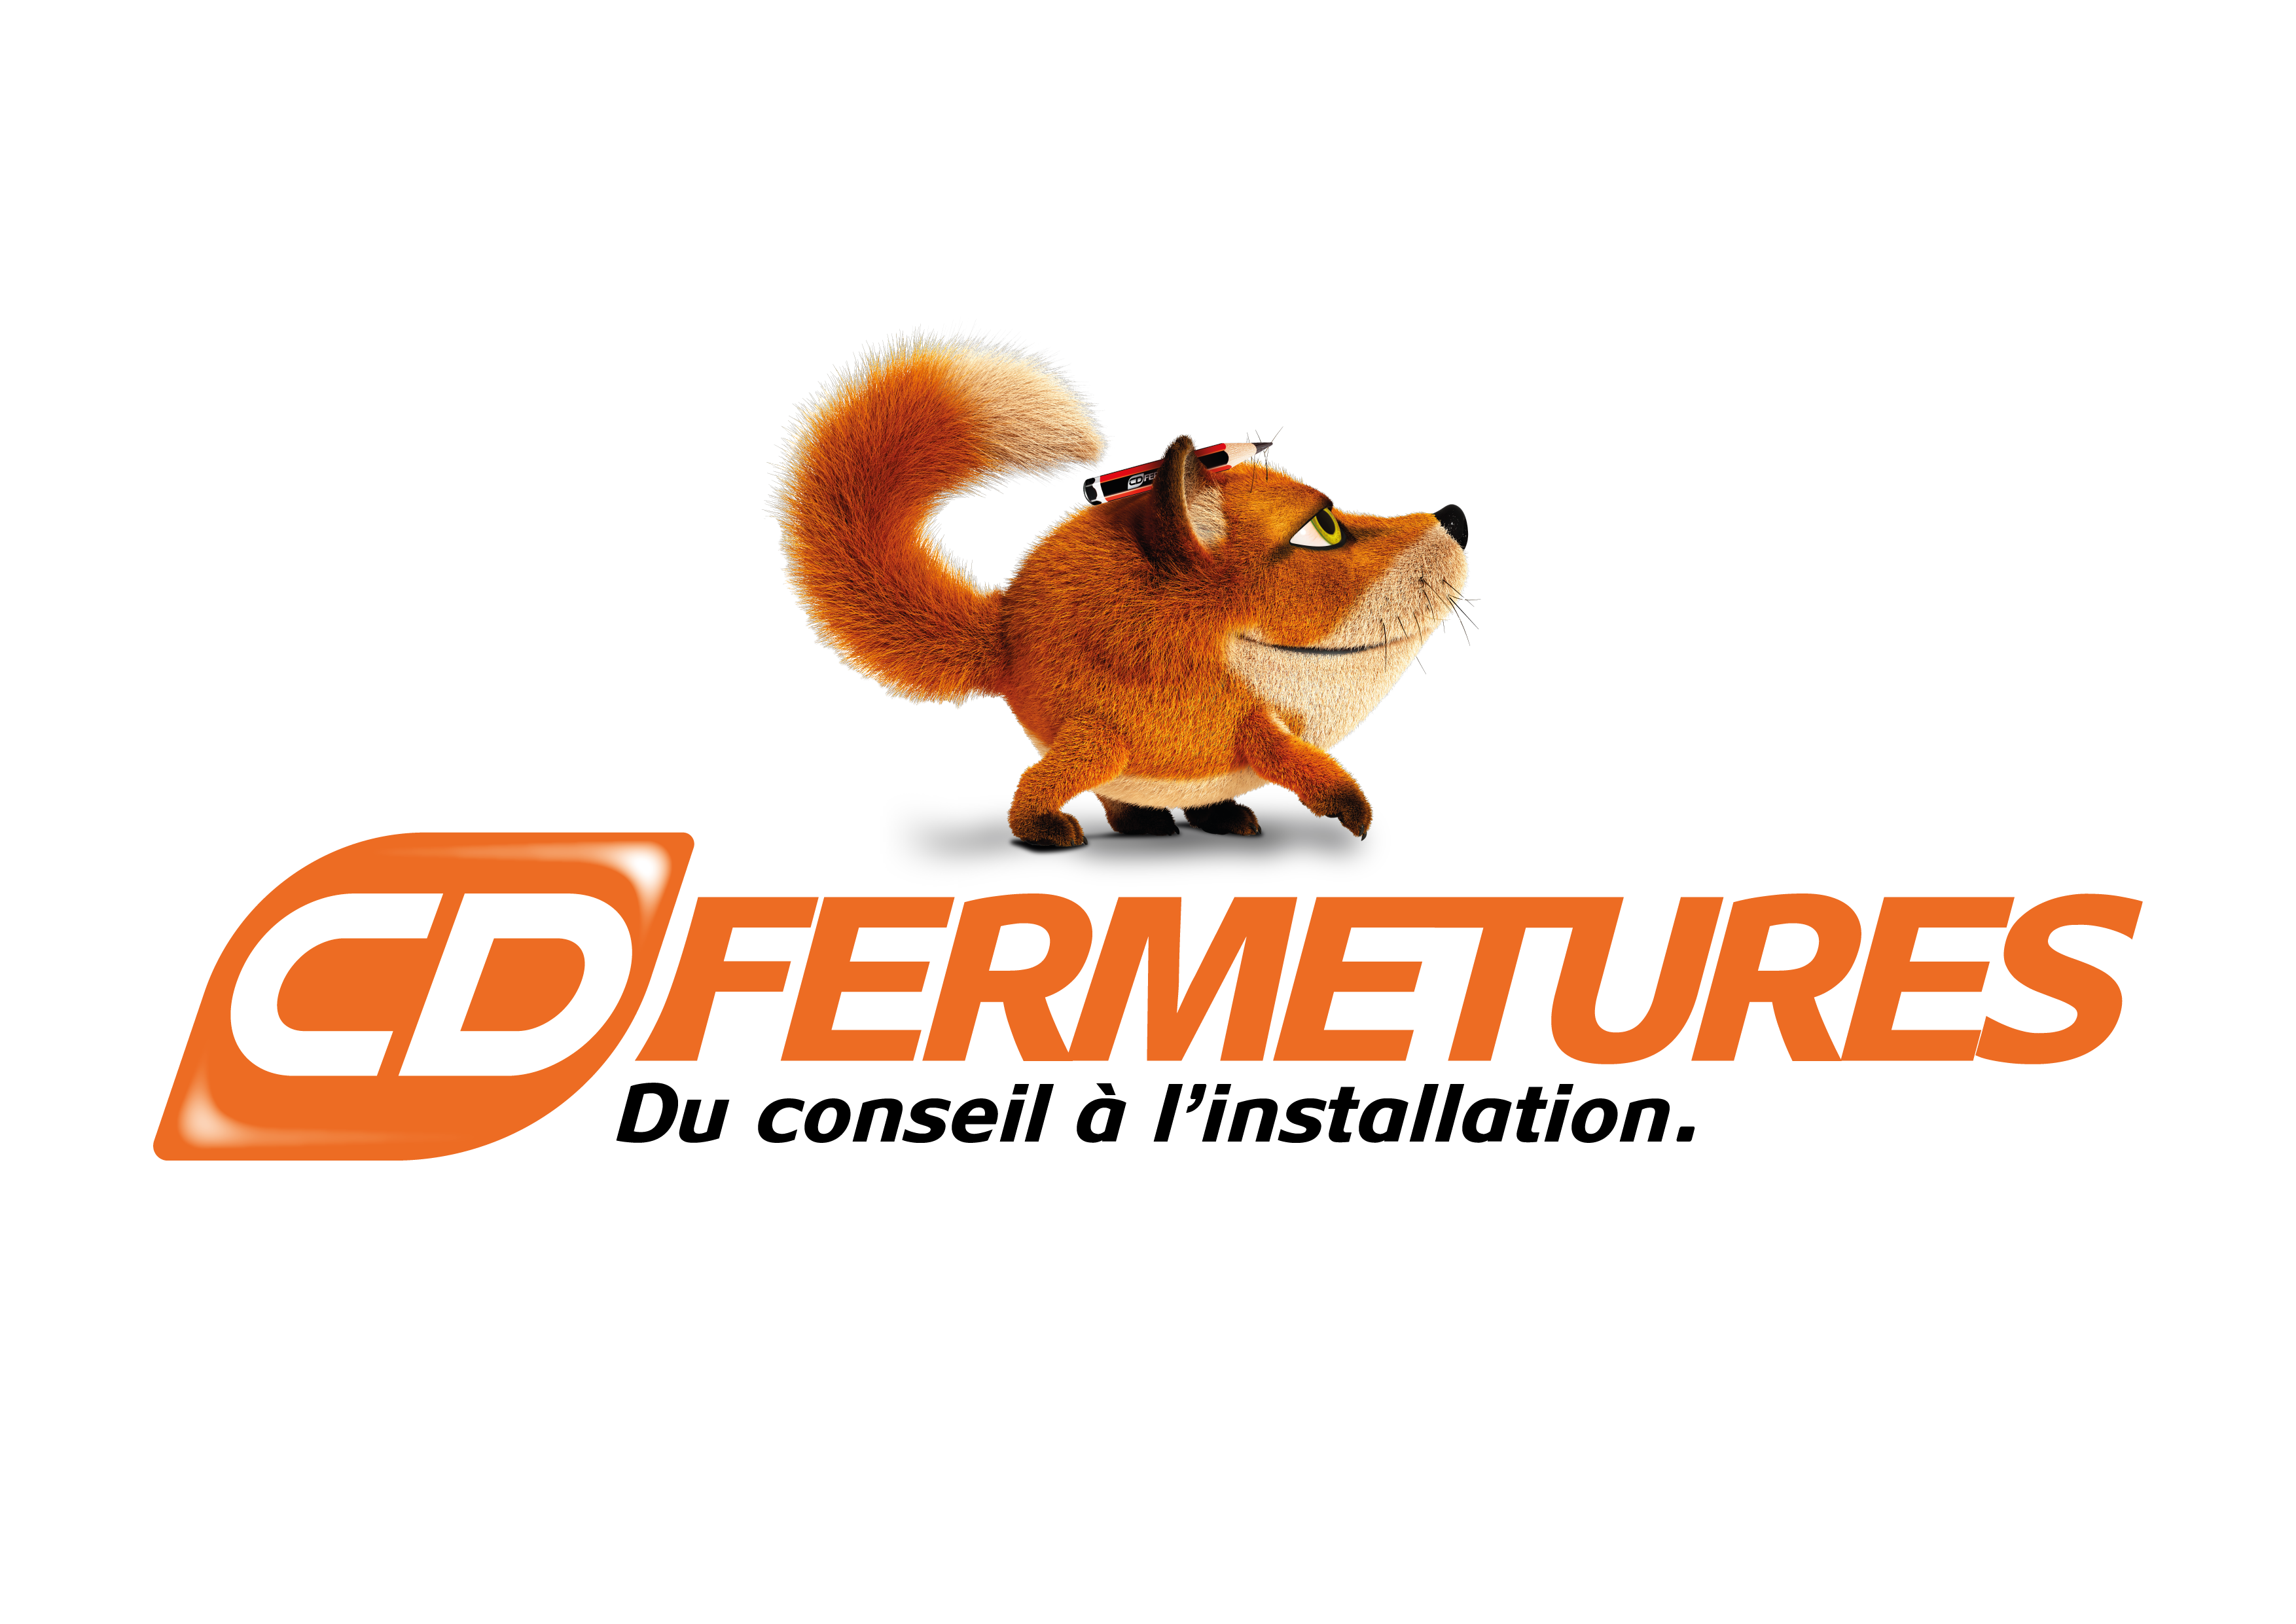 Logo - CD Fermetures